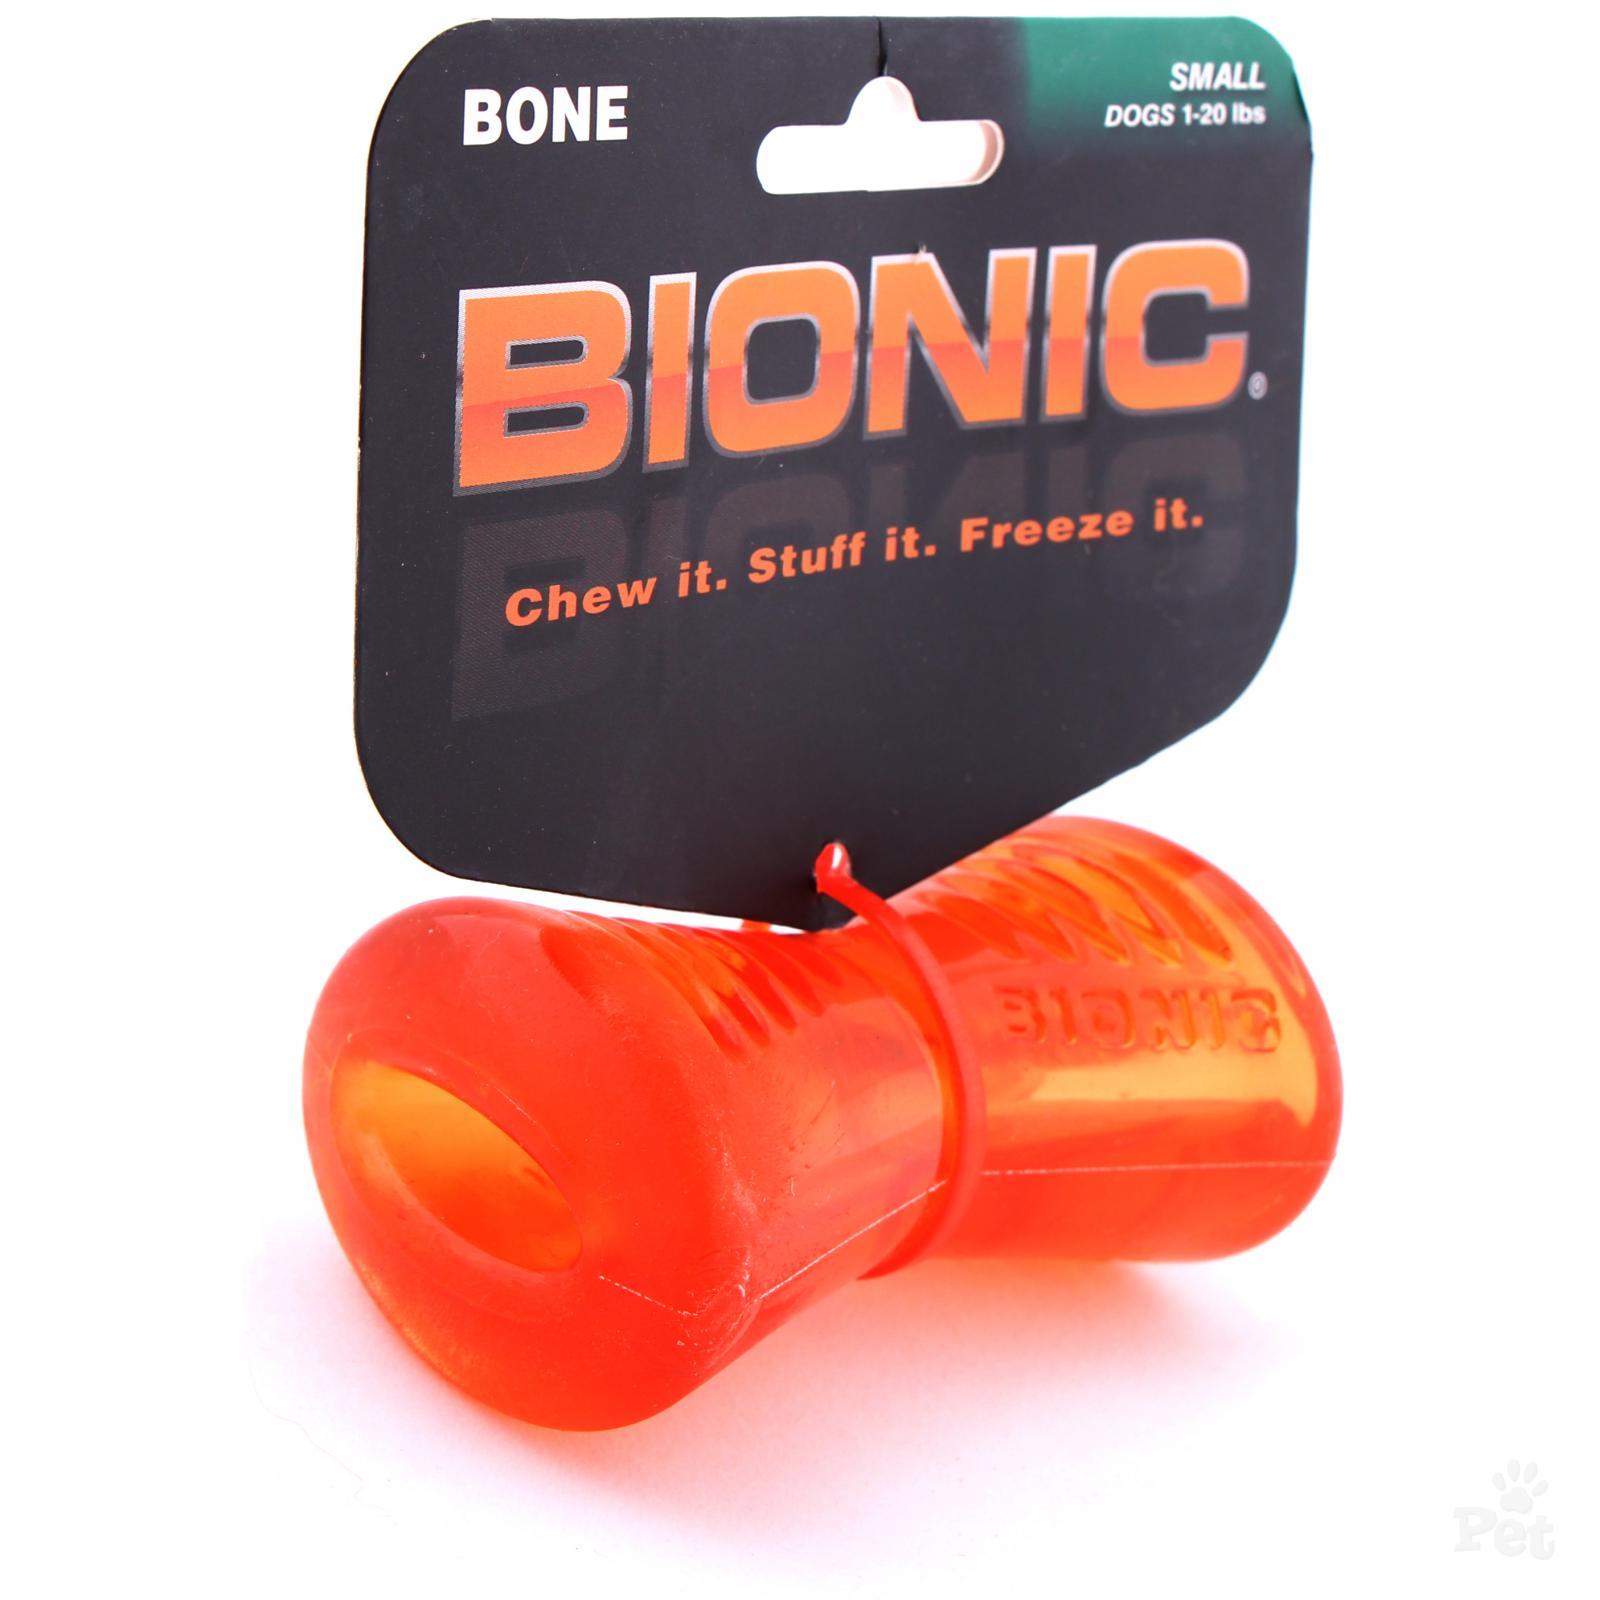 Bionic bone